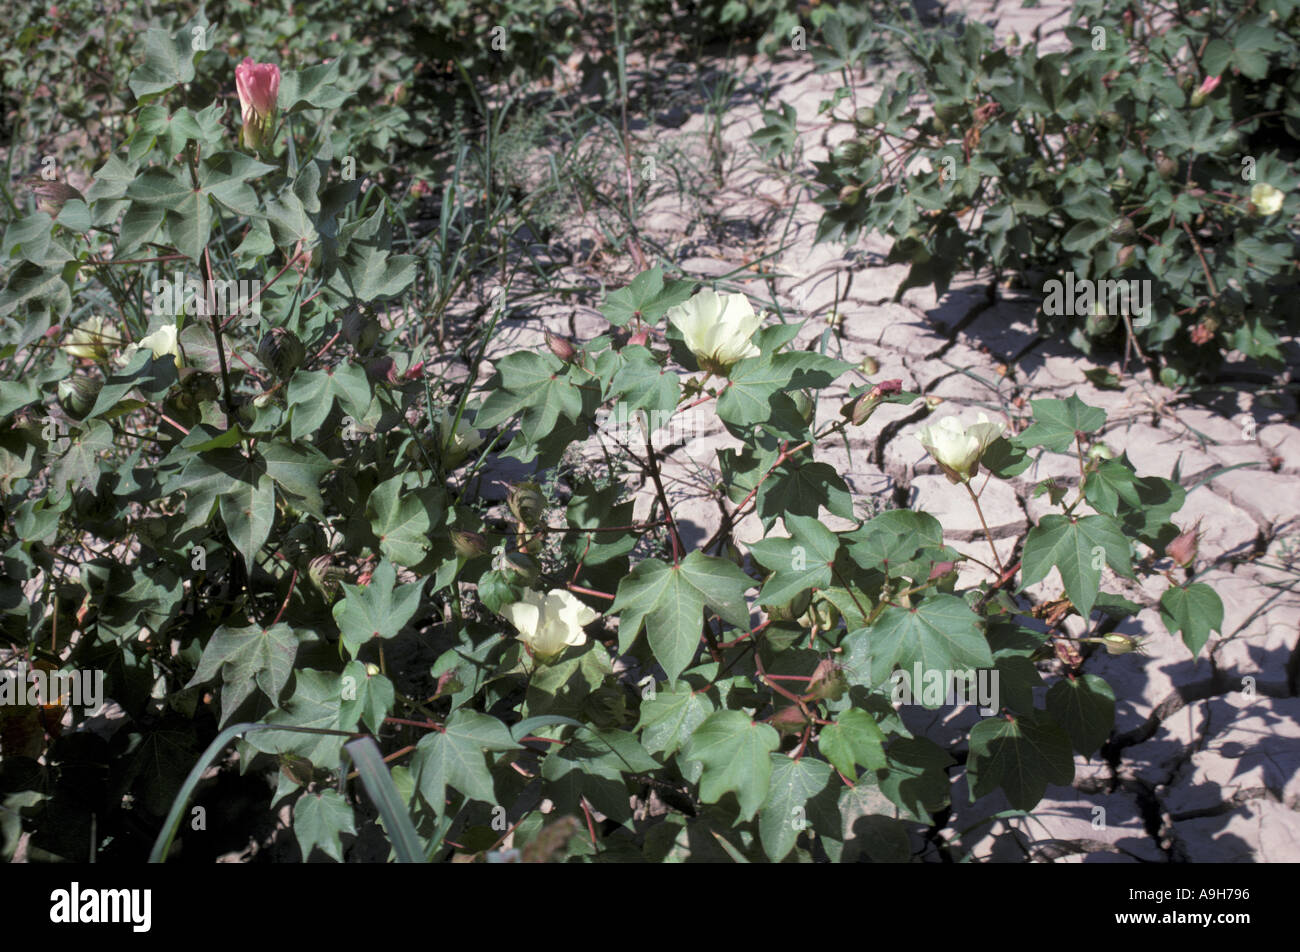 La récolte des plants de coton coton Agriculture Delta Menderes Turquie Septembre Banque D'Images